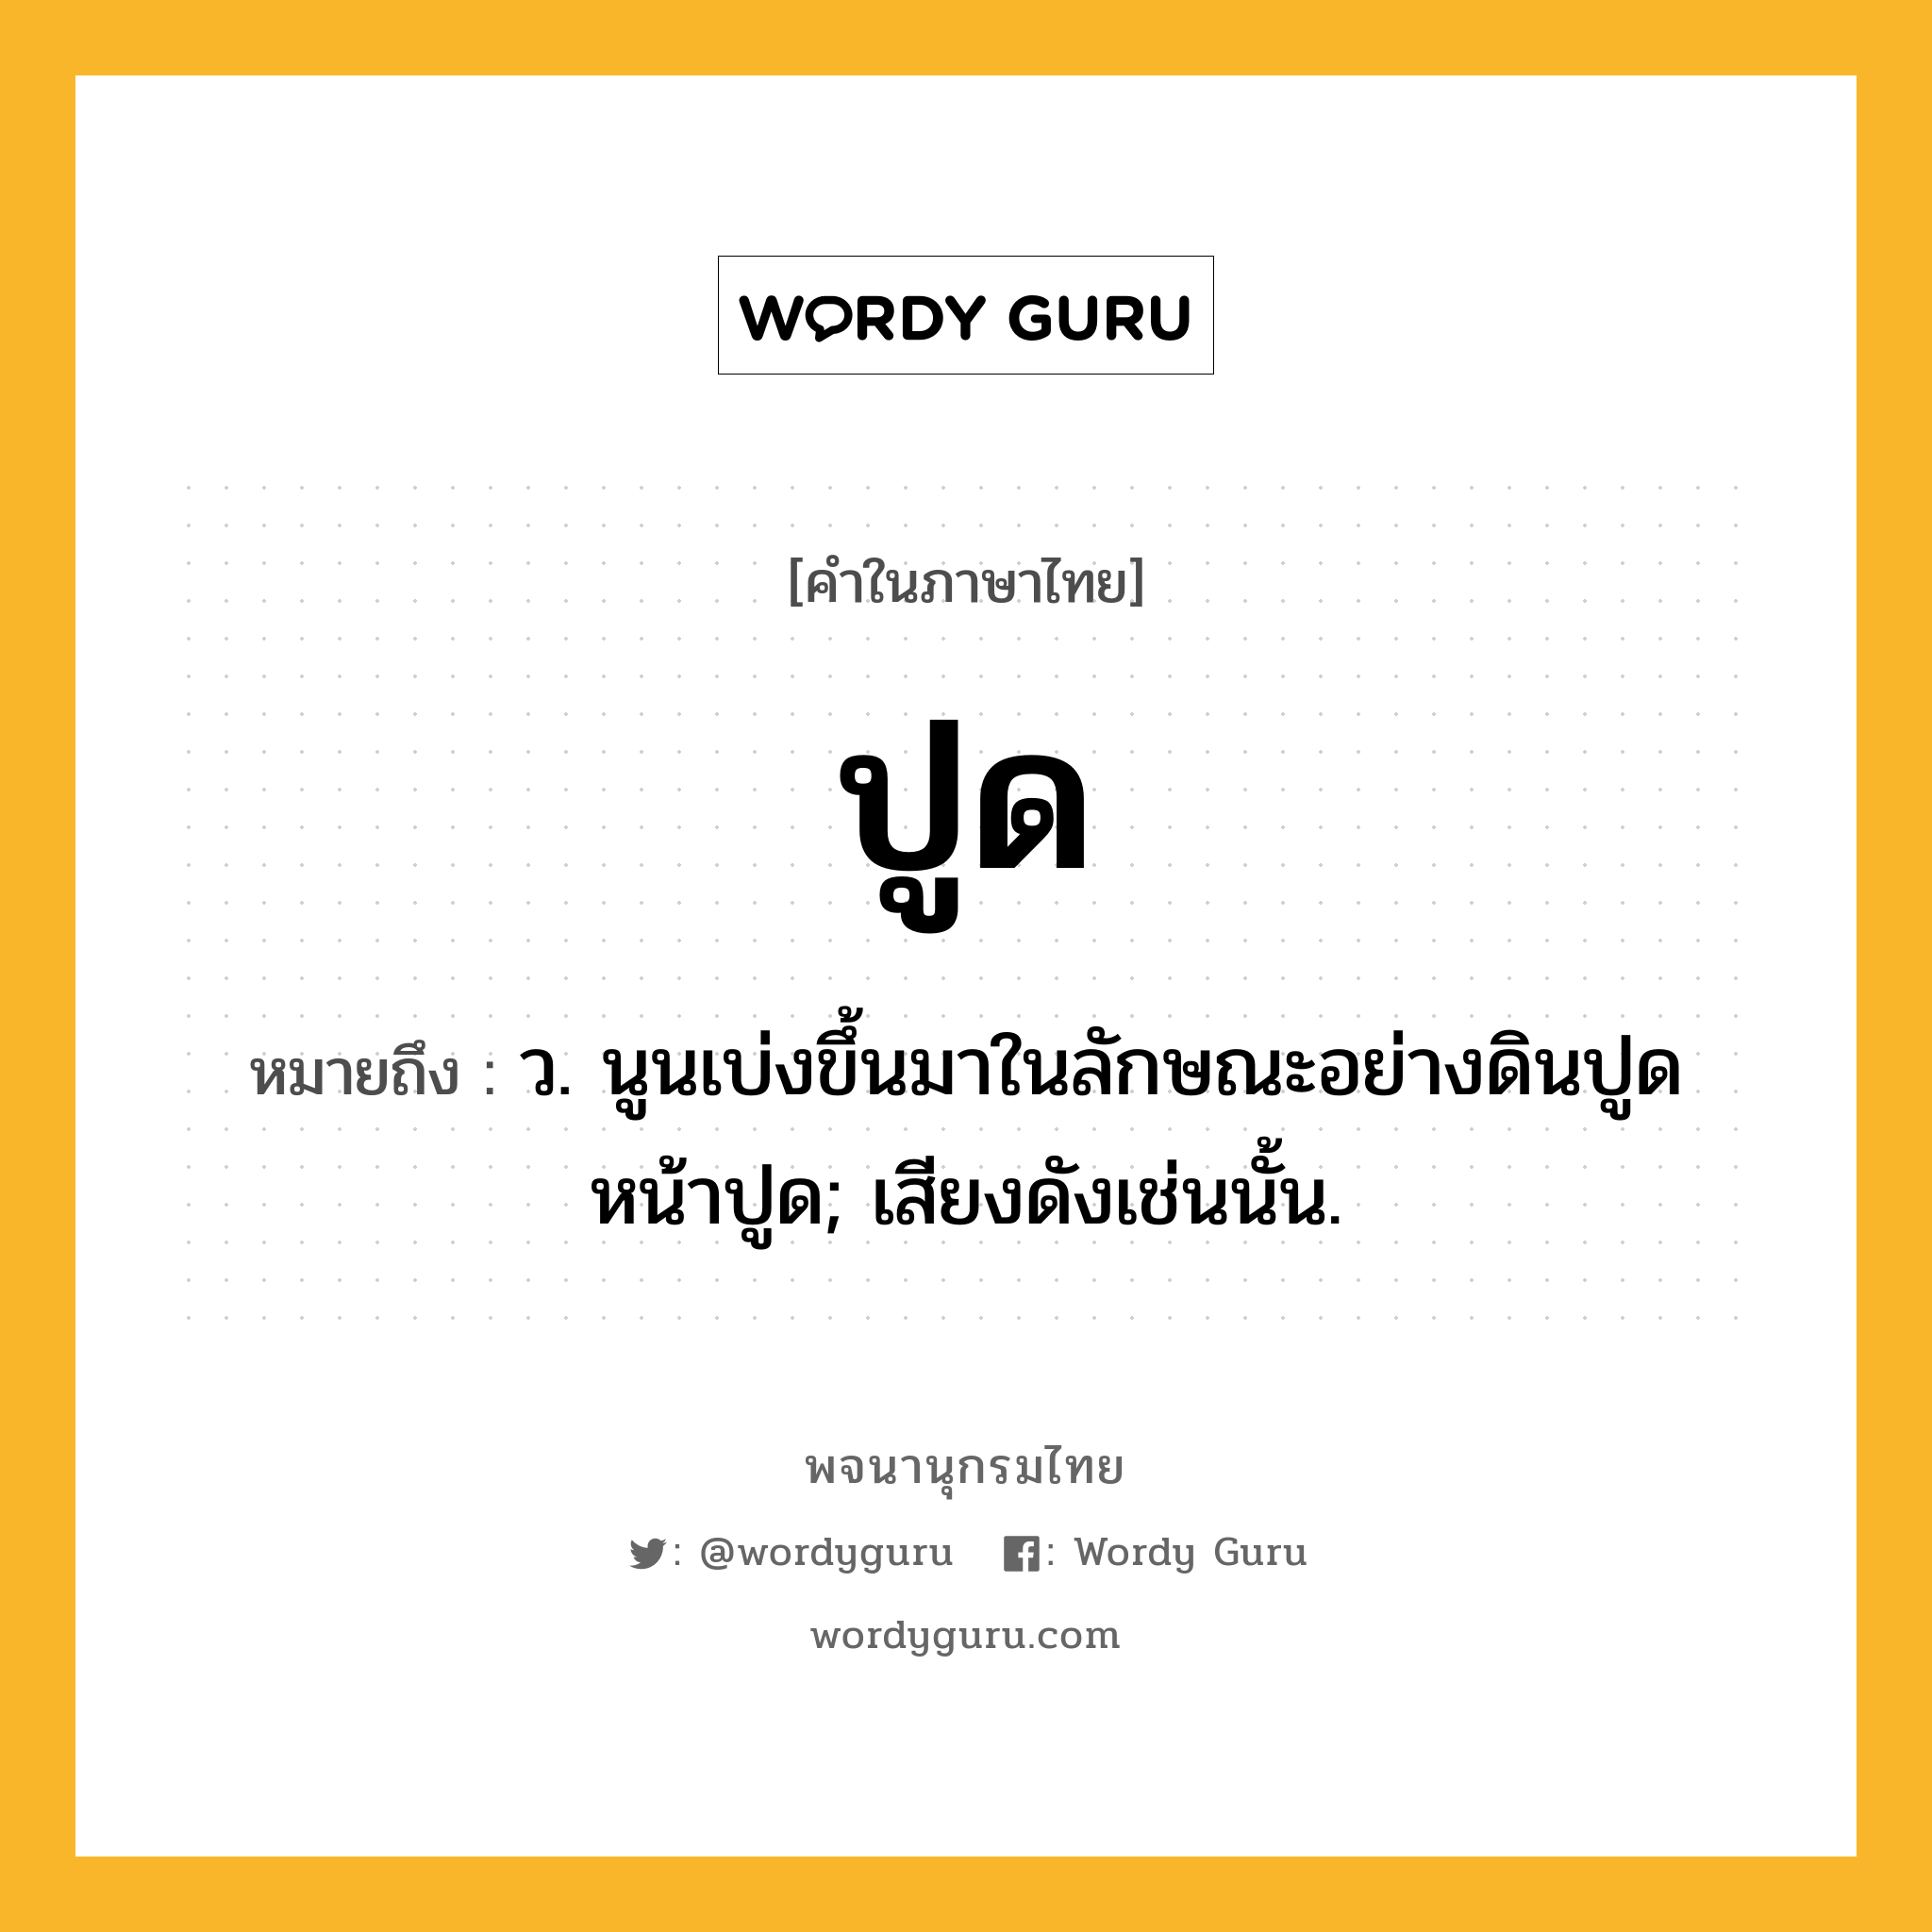 ปูด หมายถึงอะไร?, คำในภาษาไทย ปูด หมายถึง ว. นูนเบ่งขึ้นมาในลักษณะอย่างดินปูด หน้าปูด; เสียงดังเช่นนั้น.